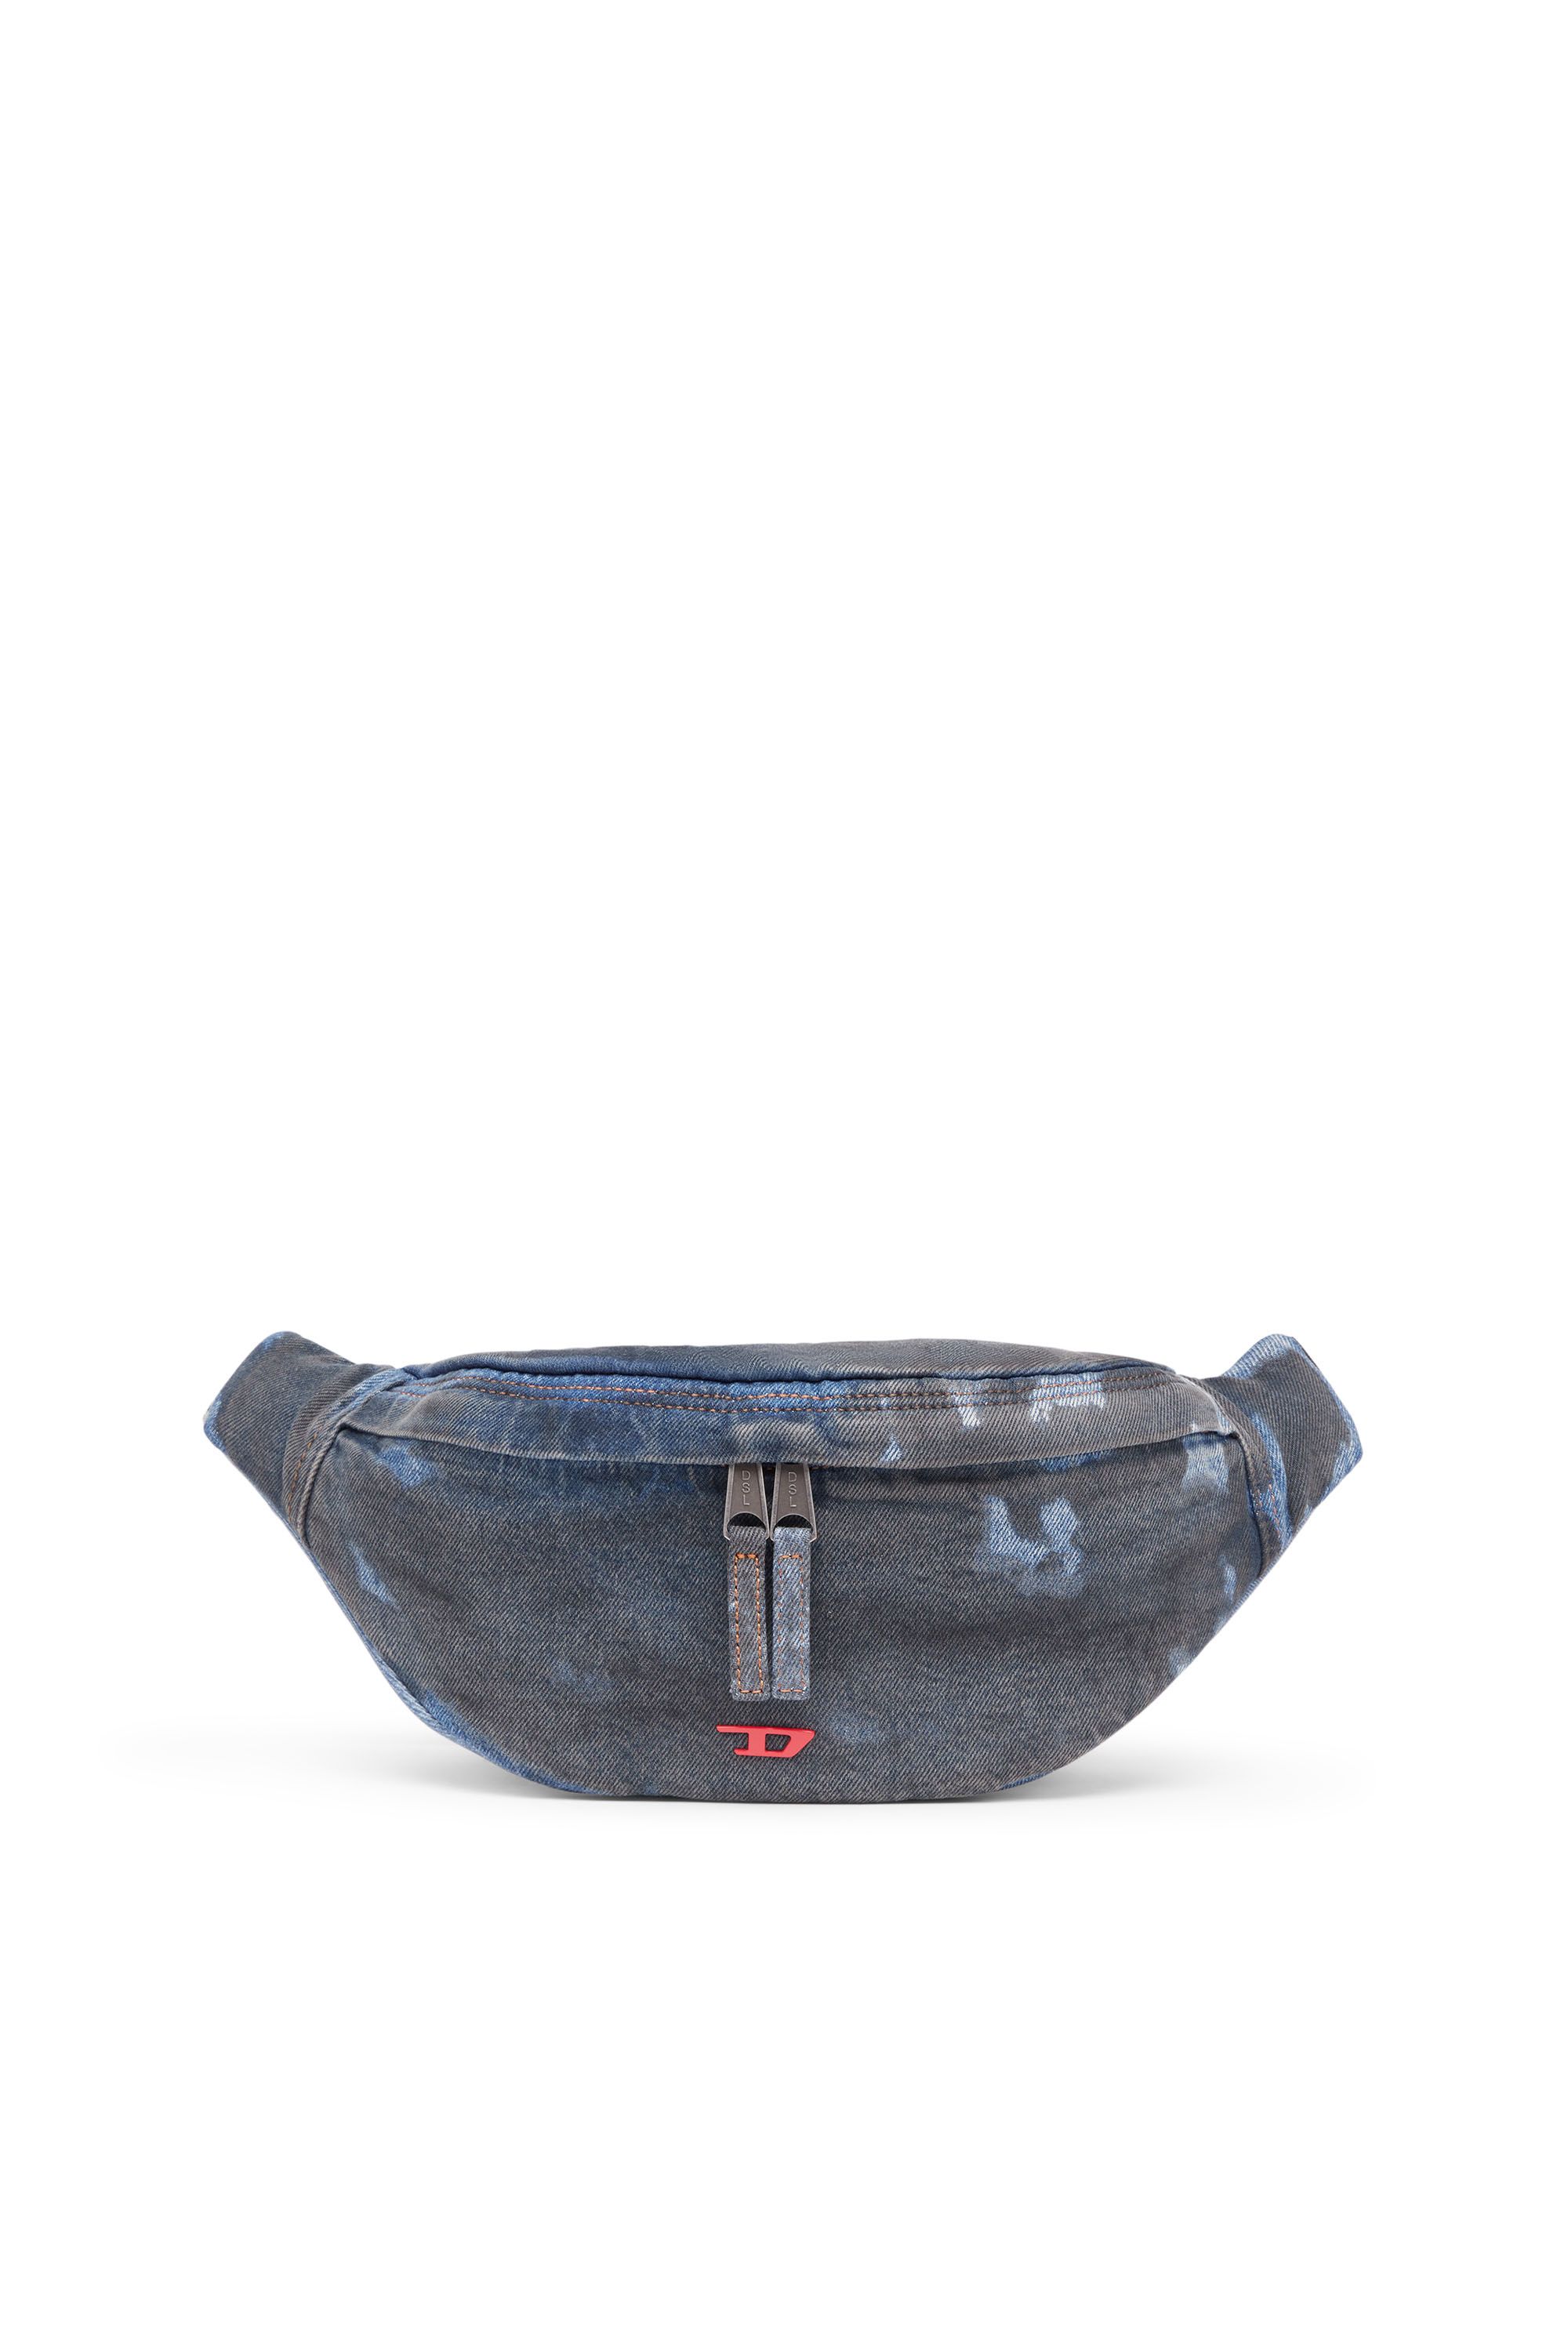 Rave Beltbag - Belt bag in coated denim